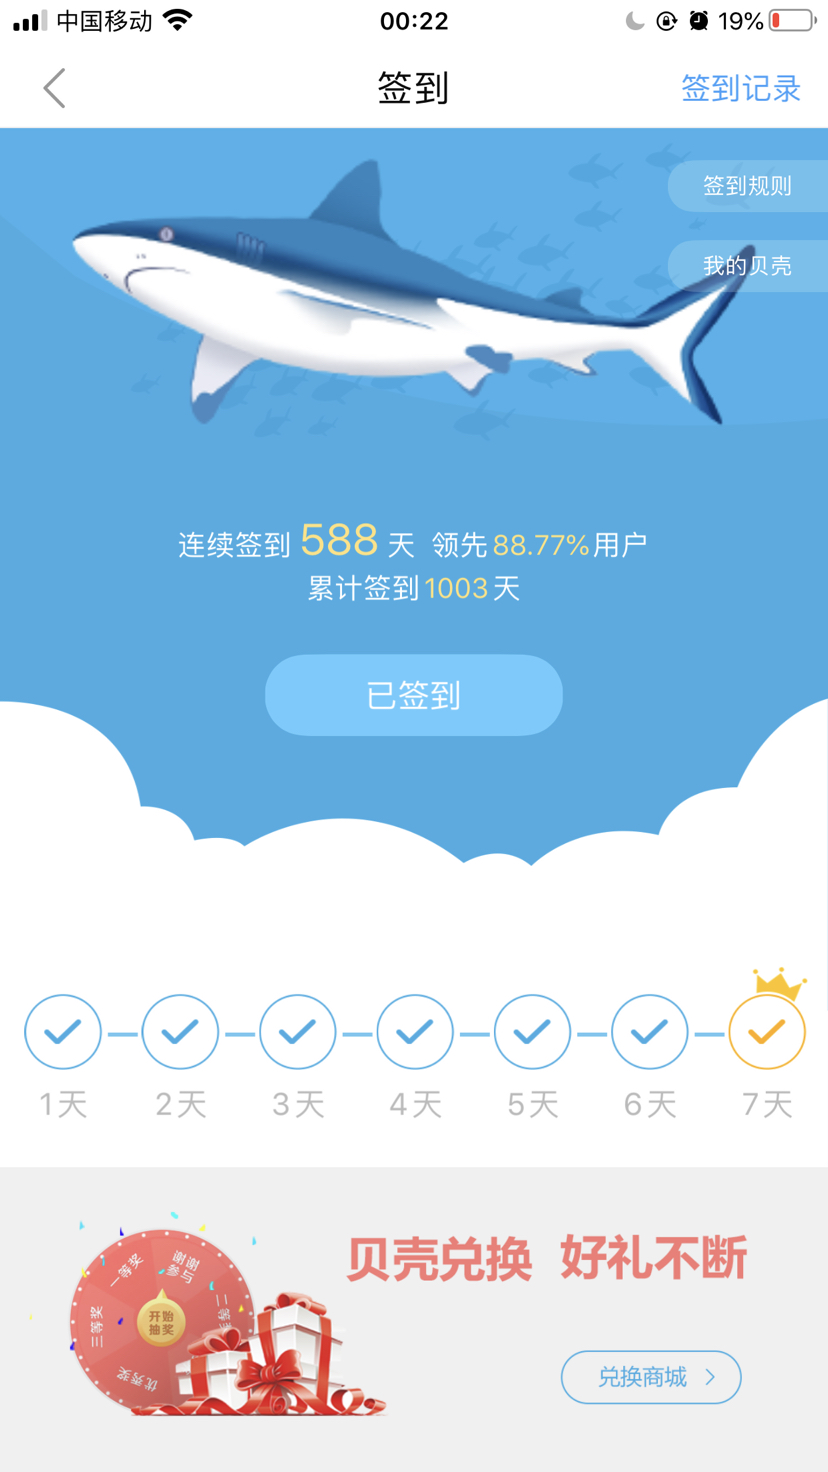 甘南州水族馆:不知不觉就变成鲨鱼了